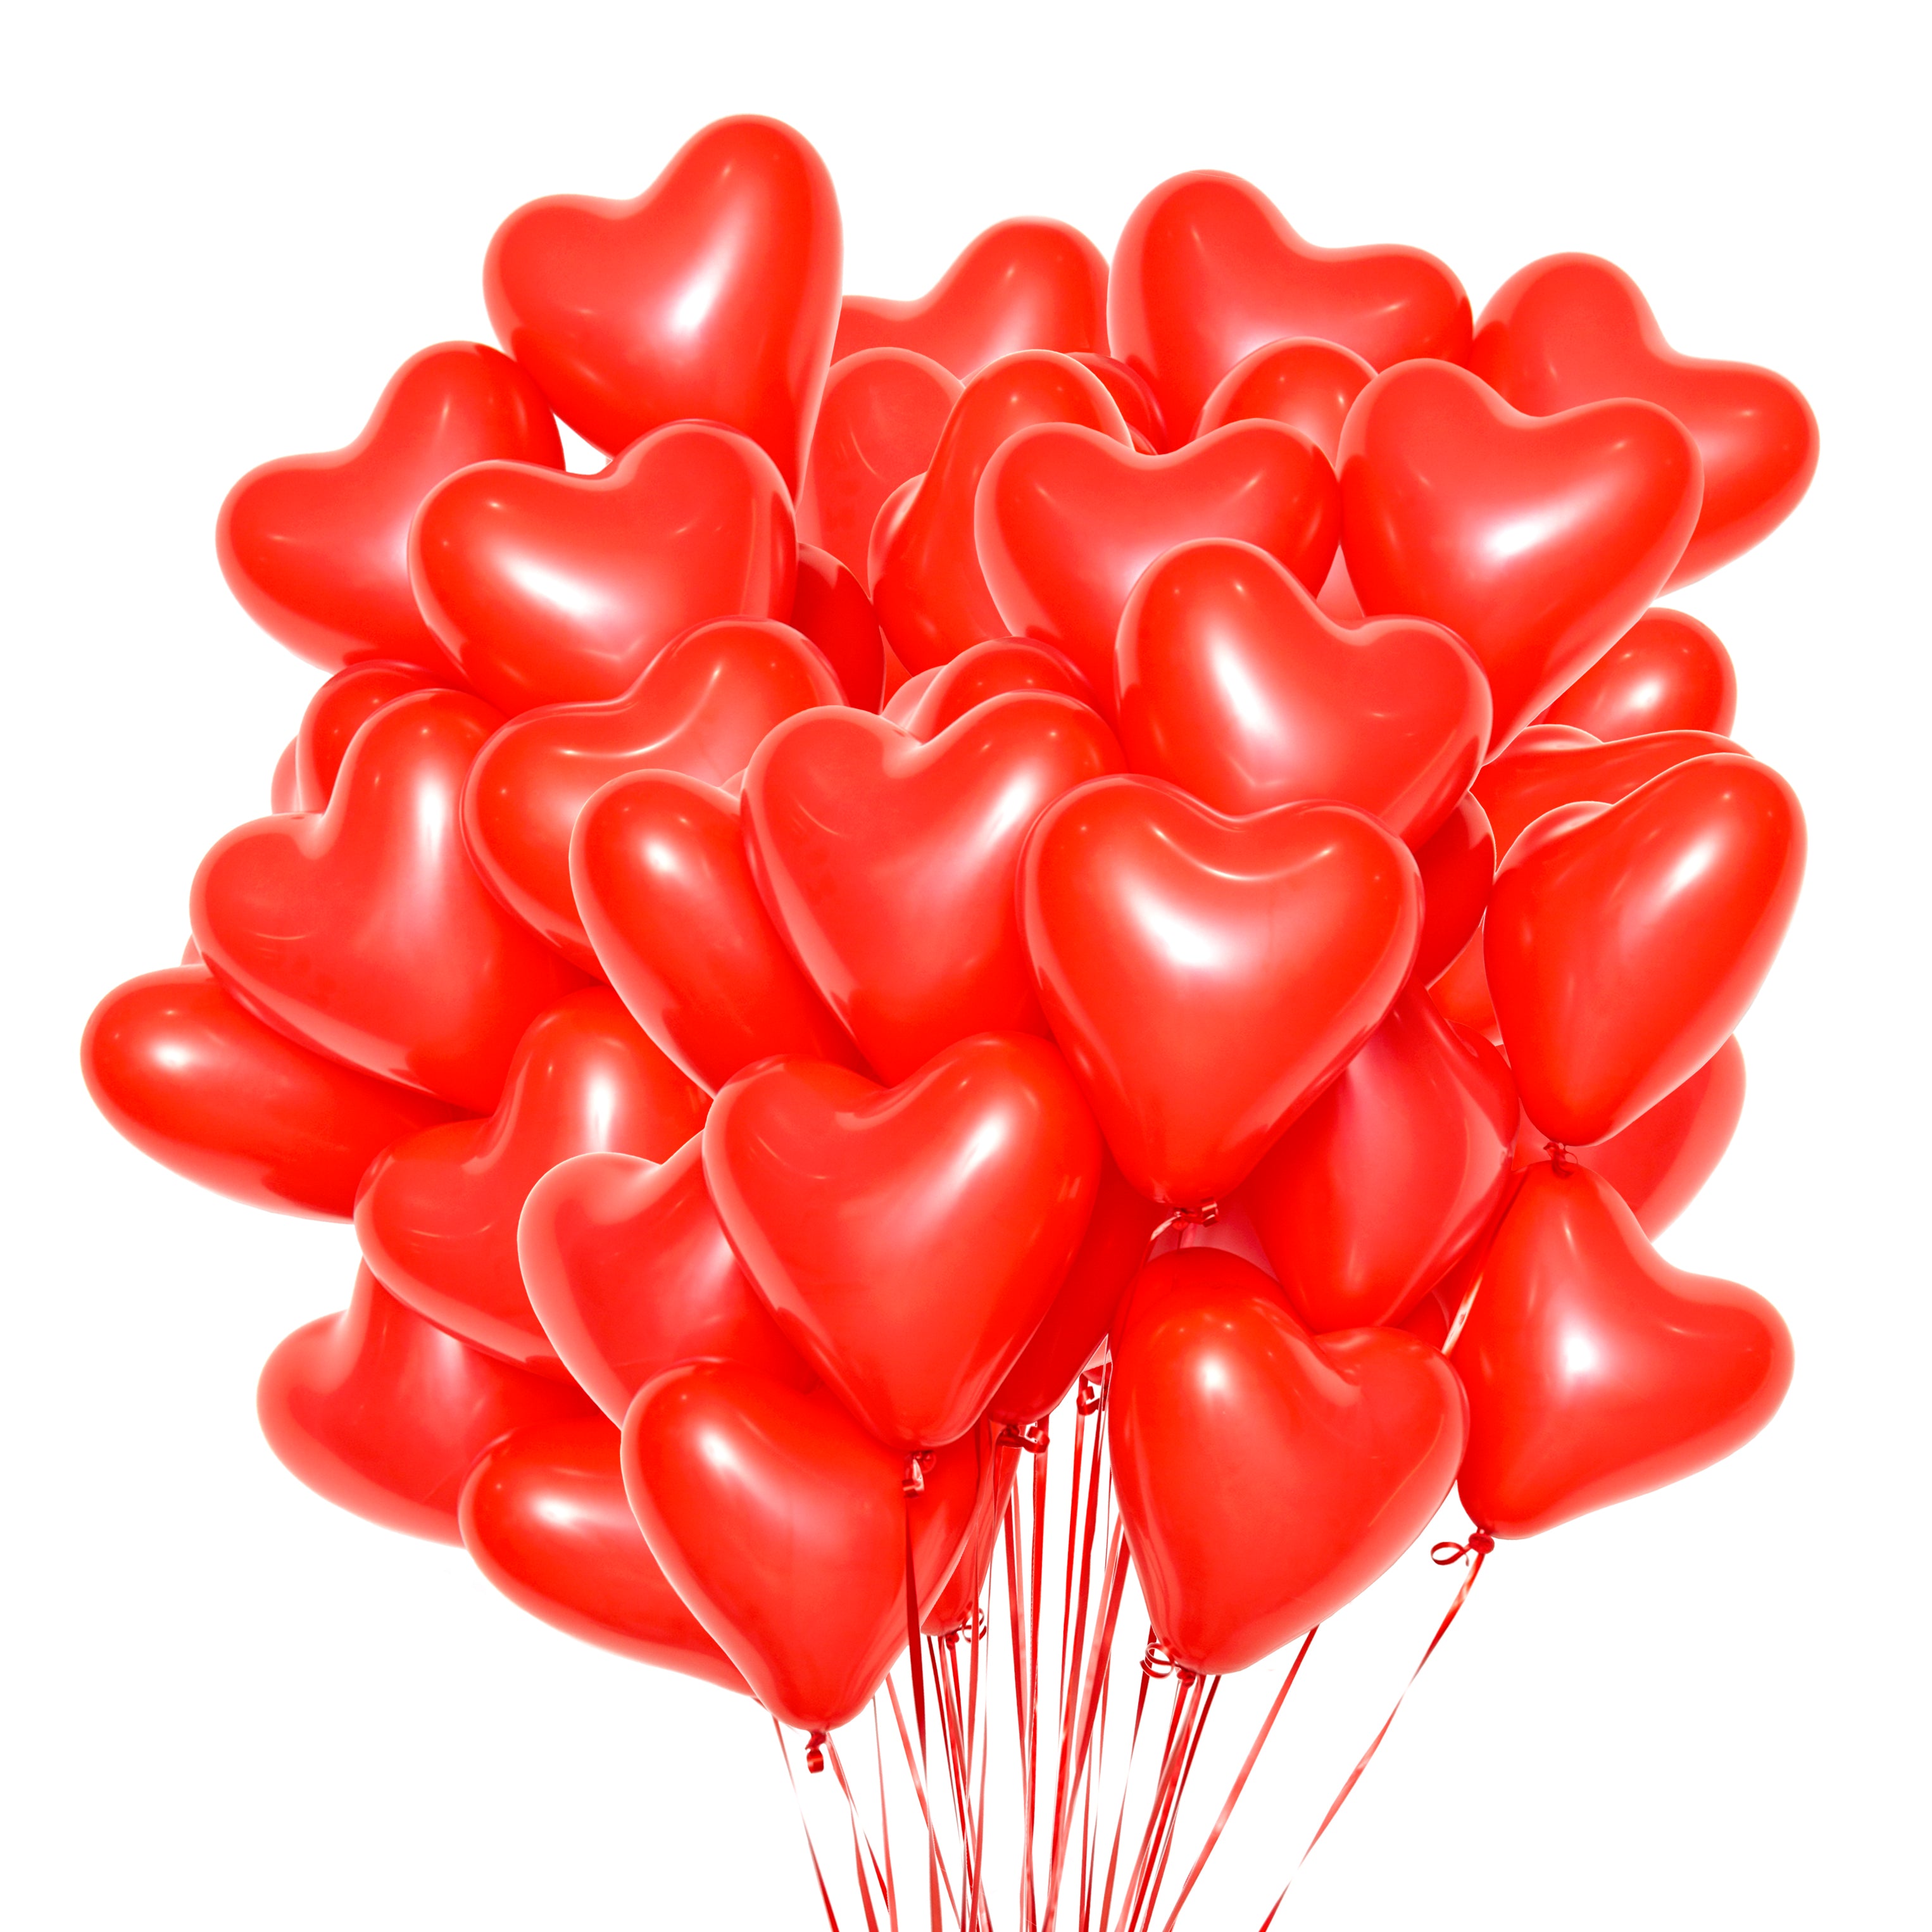 A bunch of heart balloons